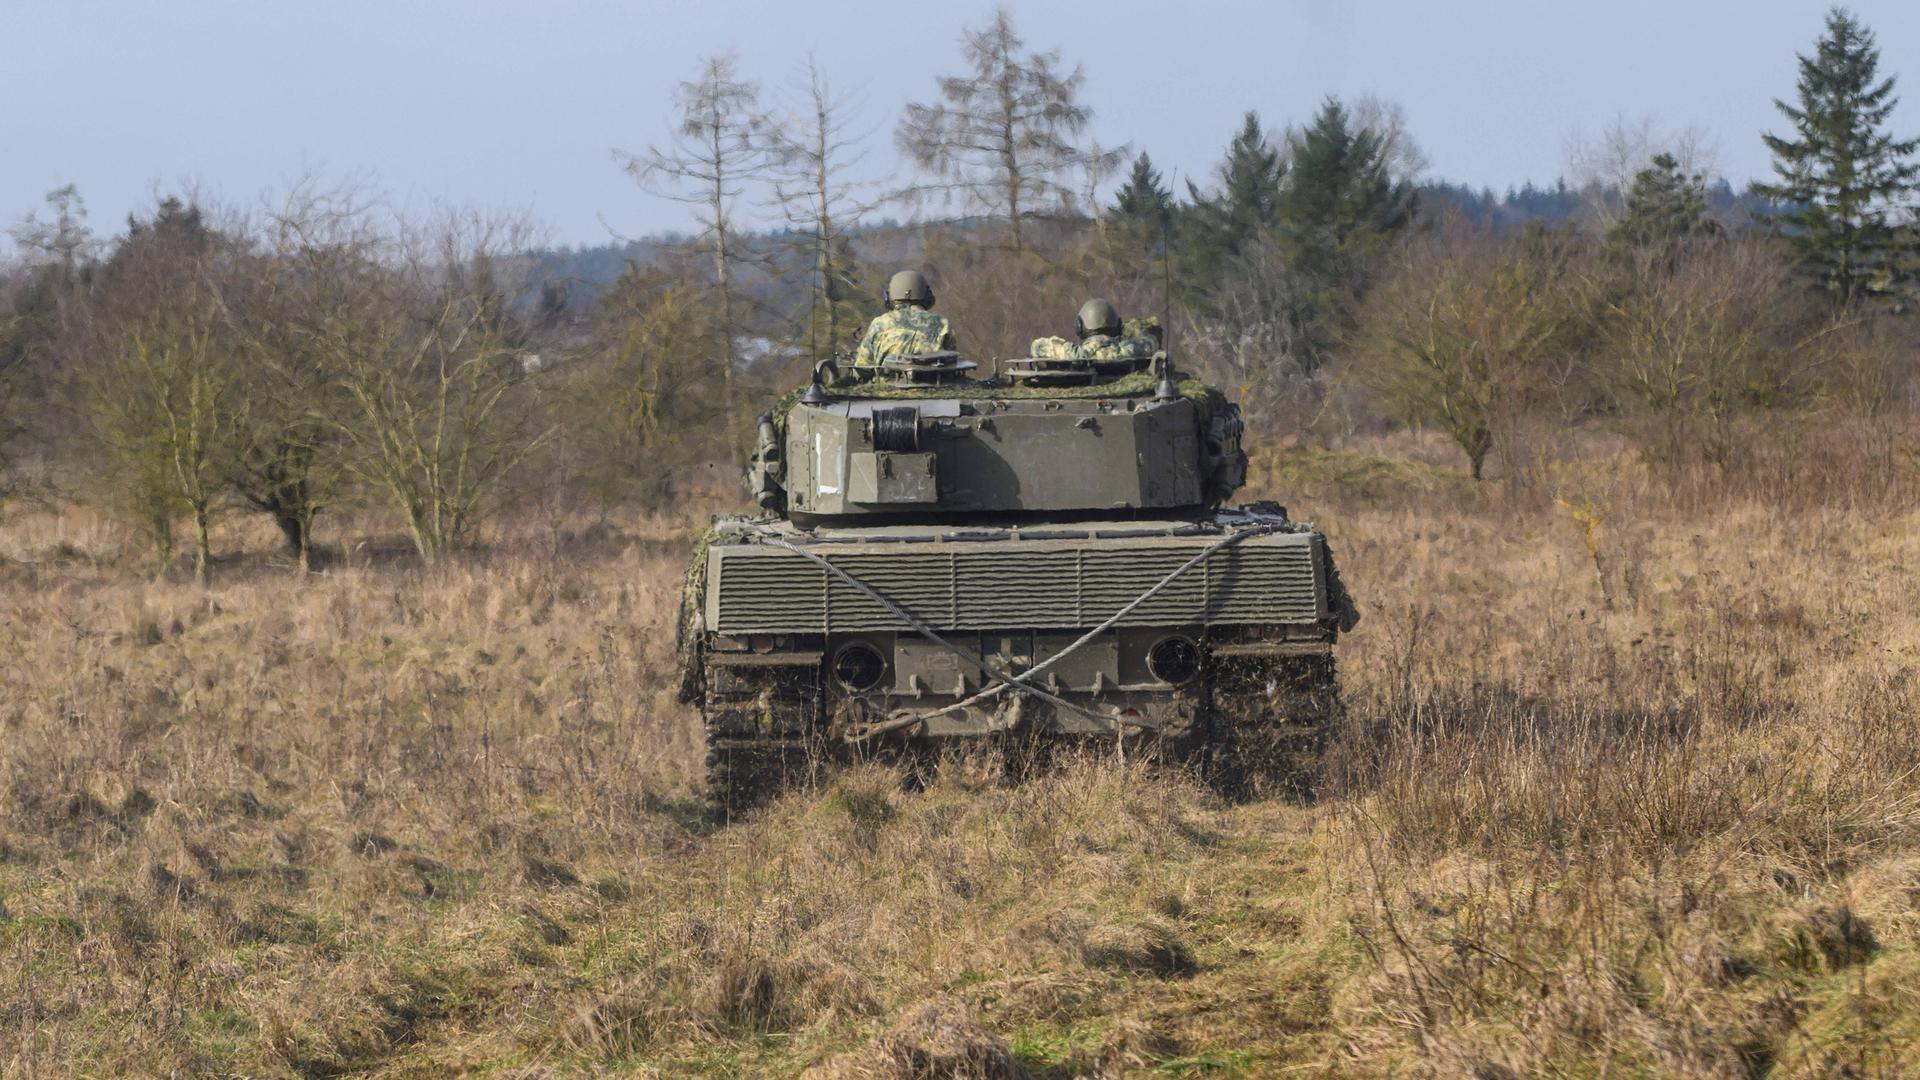 Zwei Soldaten fahren einen Panzer vom Typ Leopard durch eine Landschaft mit Bäumen.